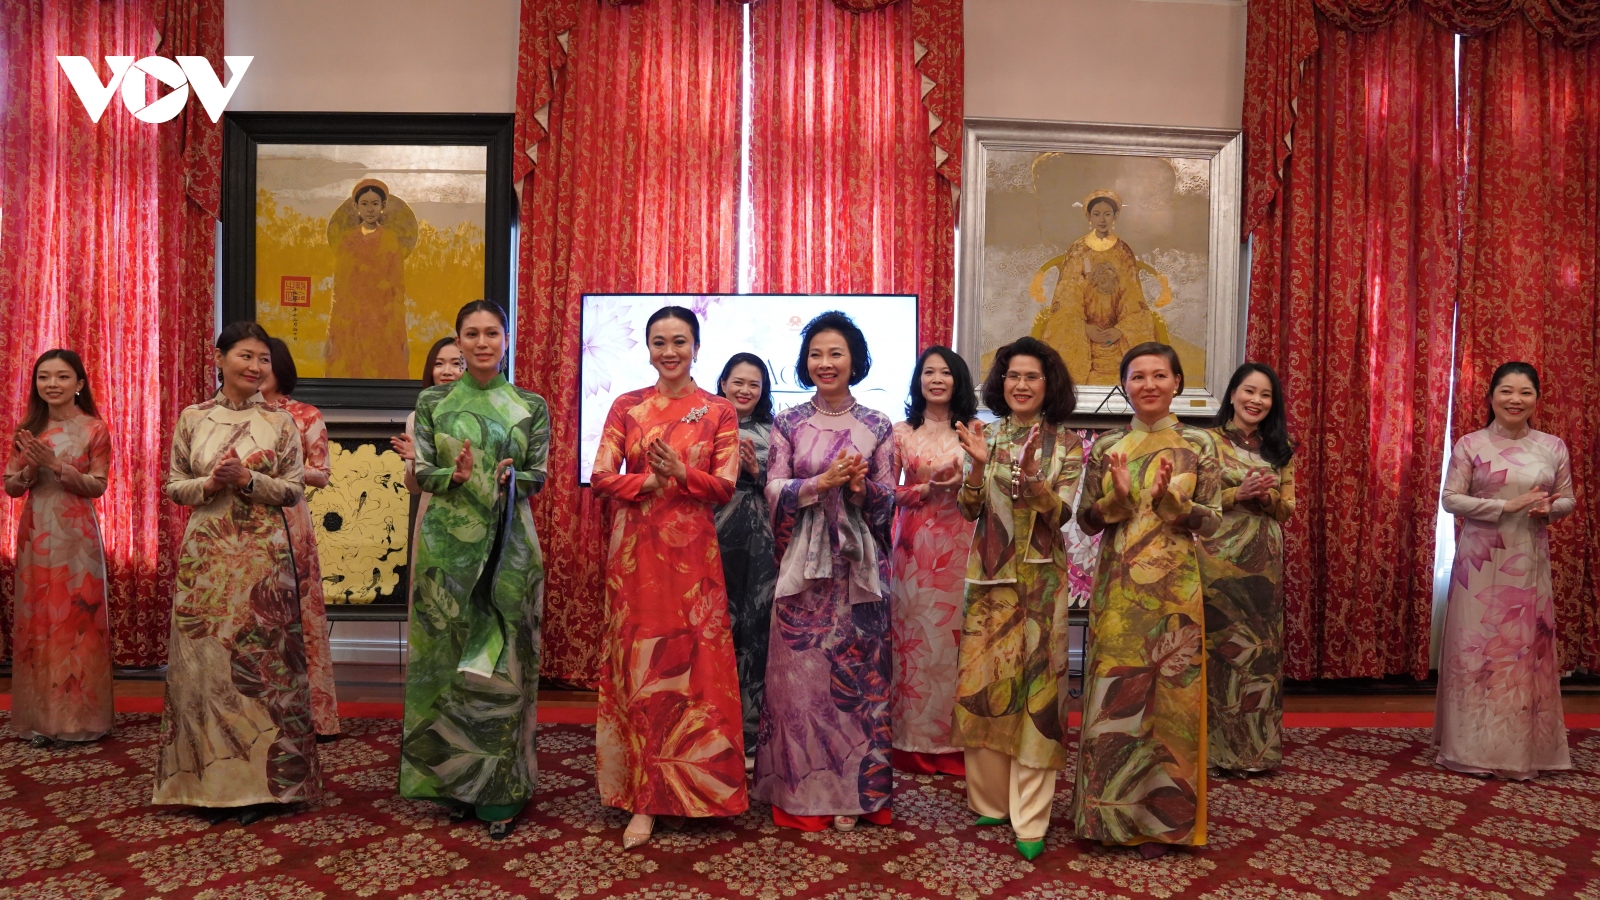 Giới thiệu tinh hoa Áo dài Việt tới bạn bè quốc tế tại Mỹ